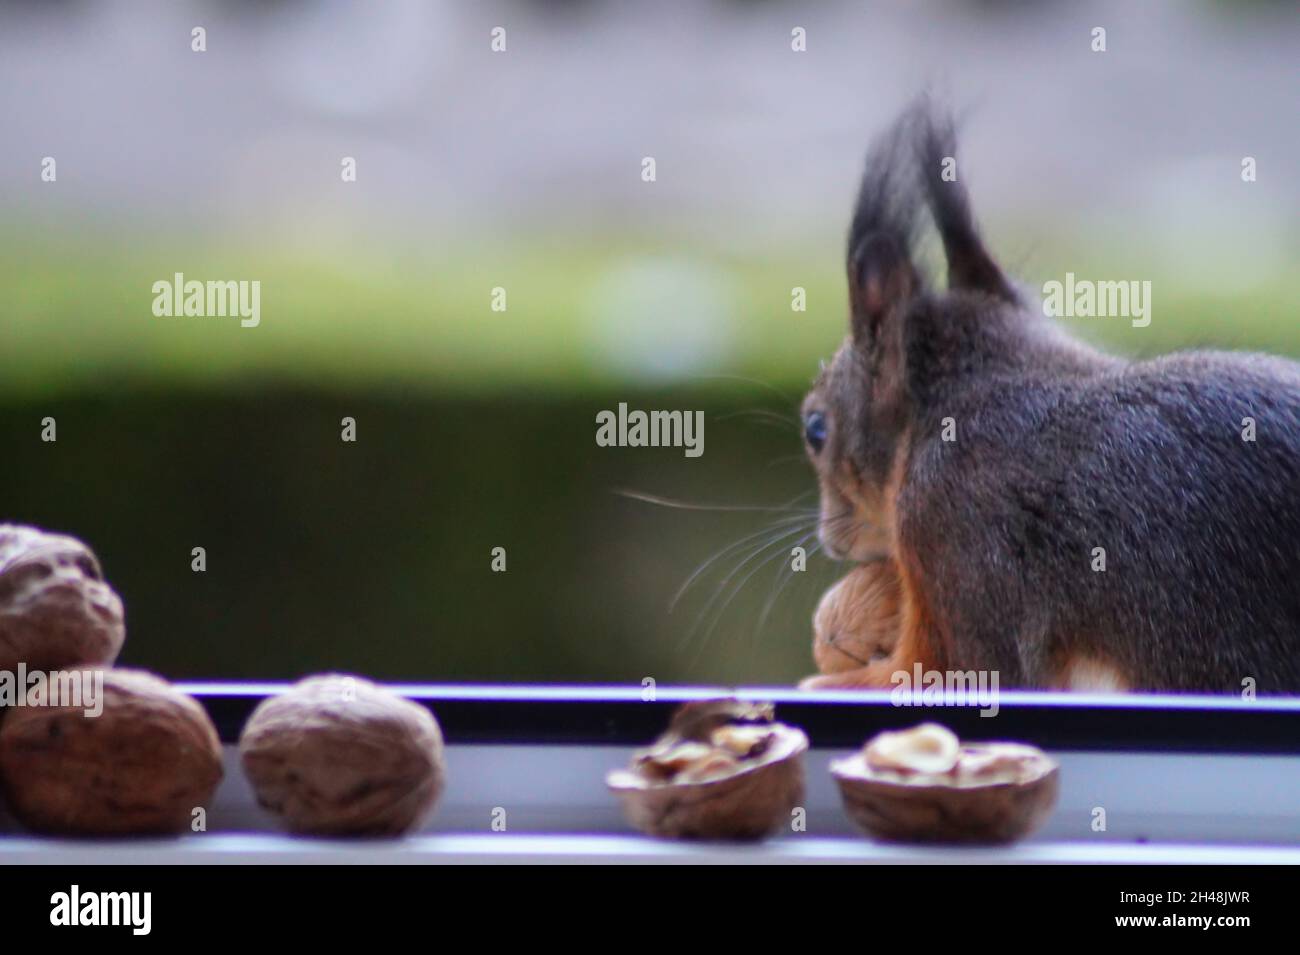 Hungriges Eichhörnchen am Fenster Stock Photo